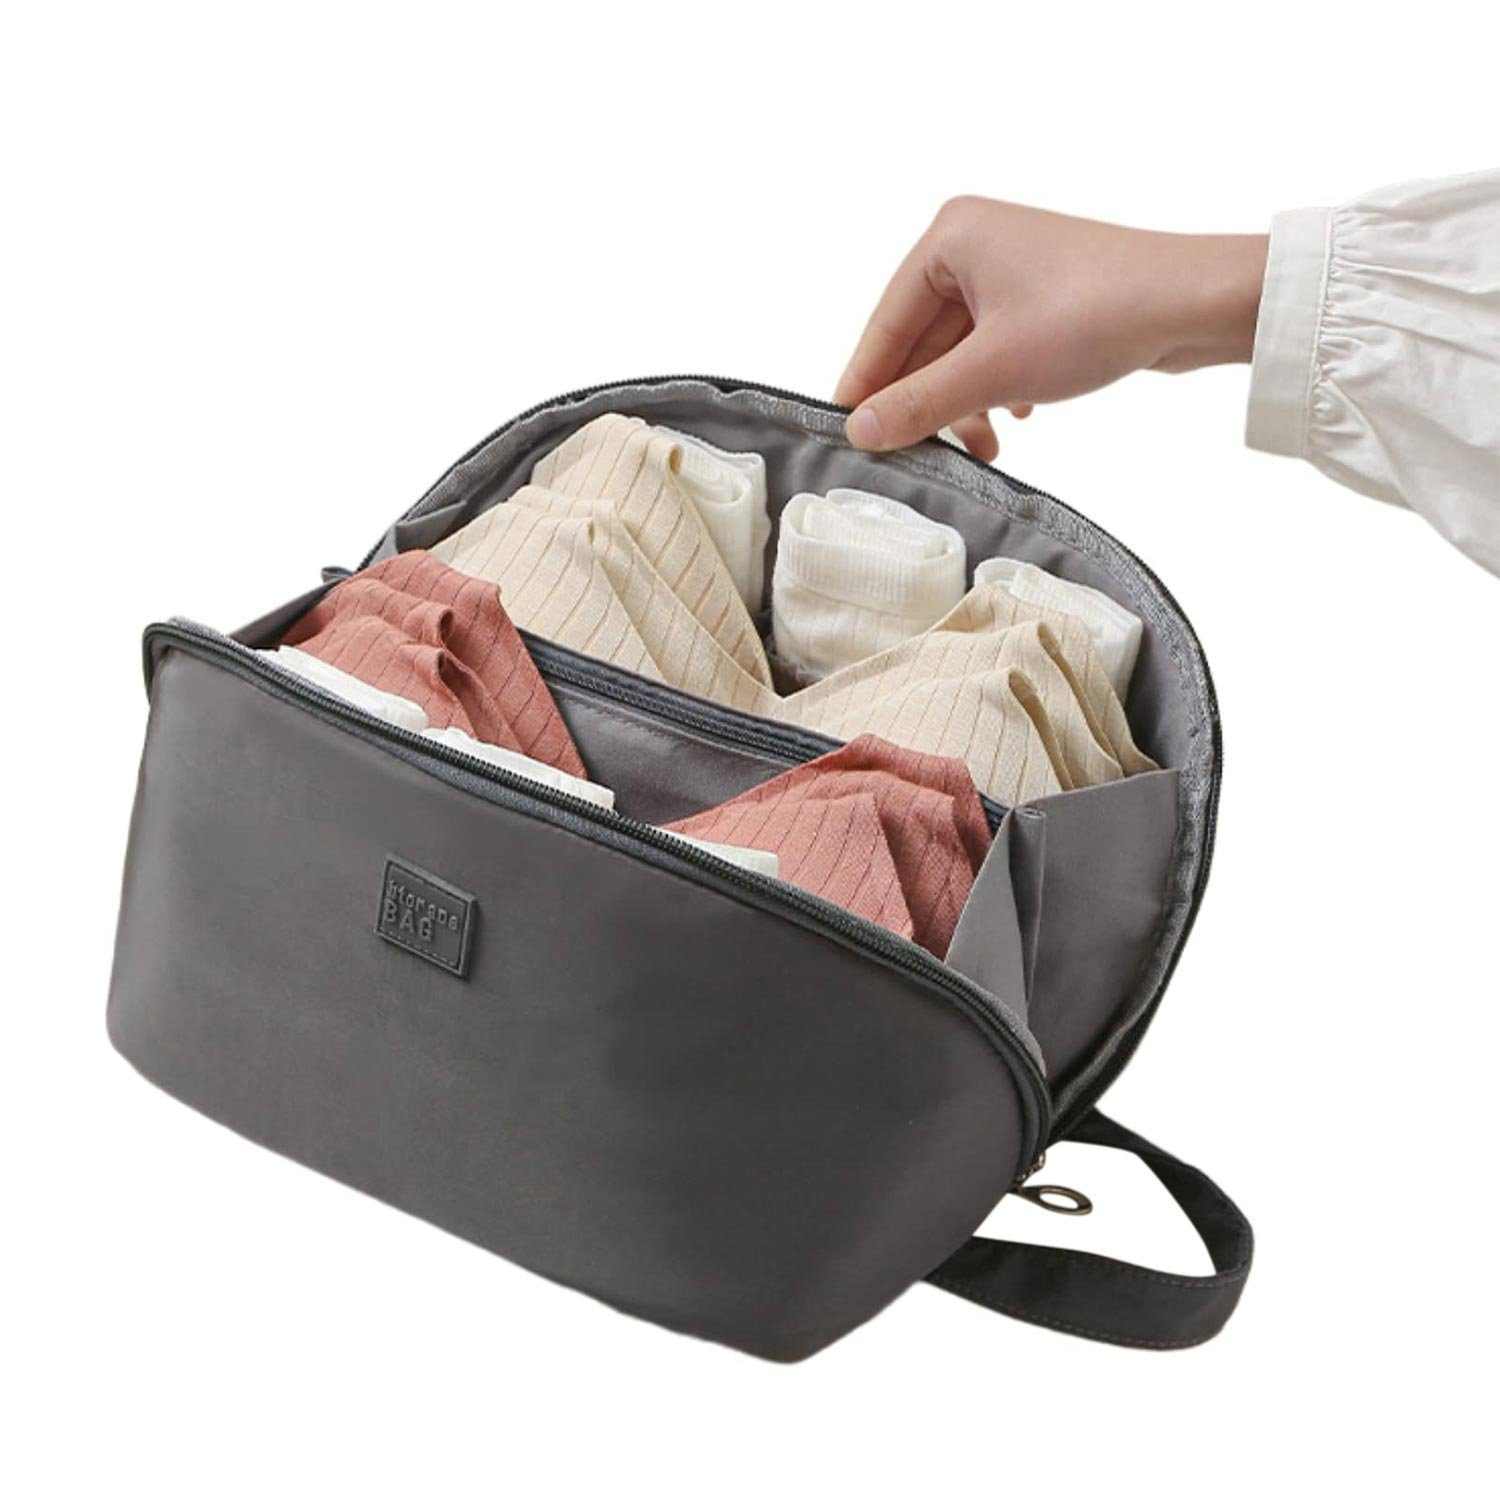 Reisetasche für Unterwäsche MAGICSHE (25*13*13cm), Multifunktionale Aufbewahrungstasche Organizer grau